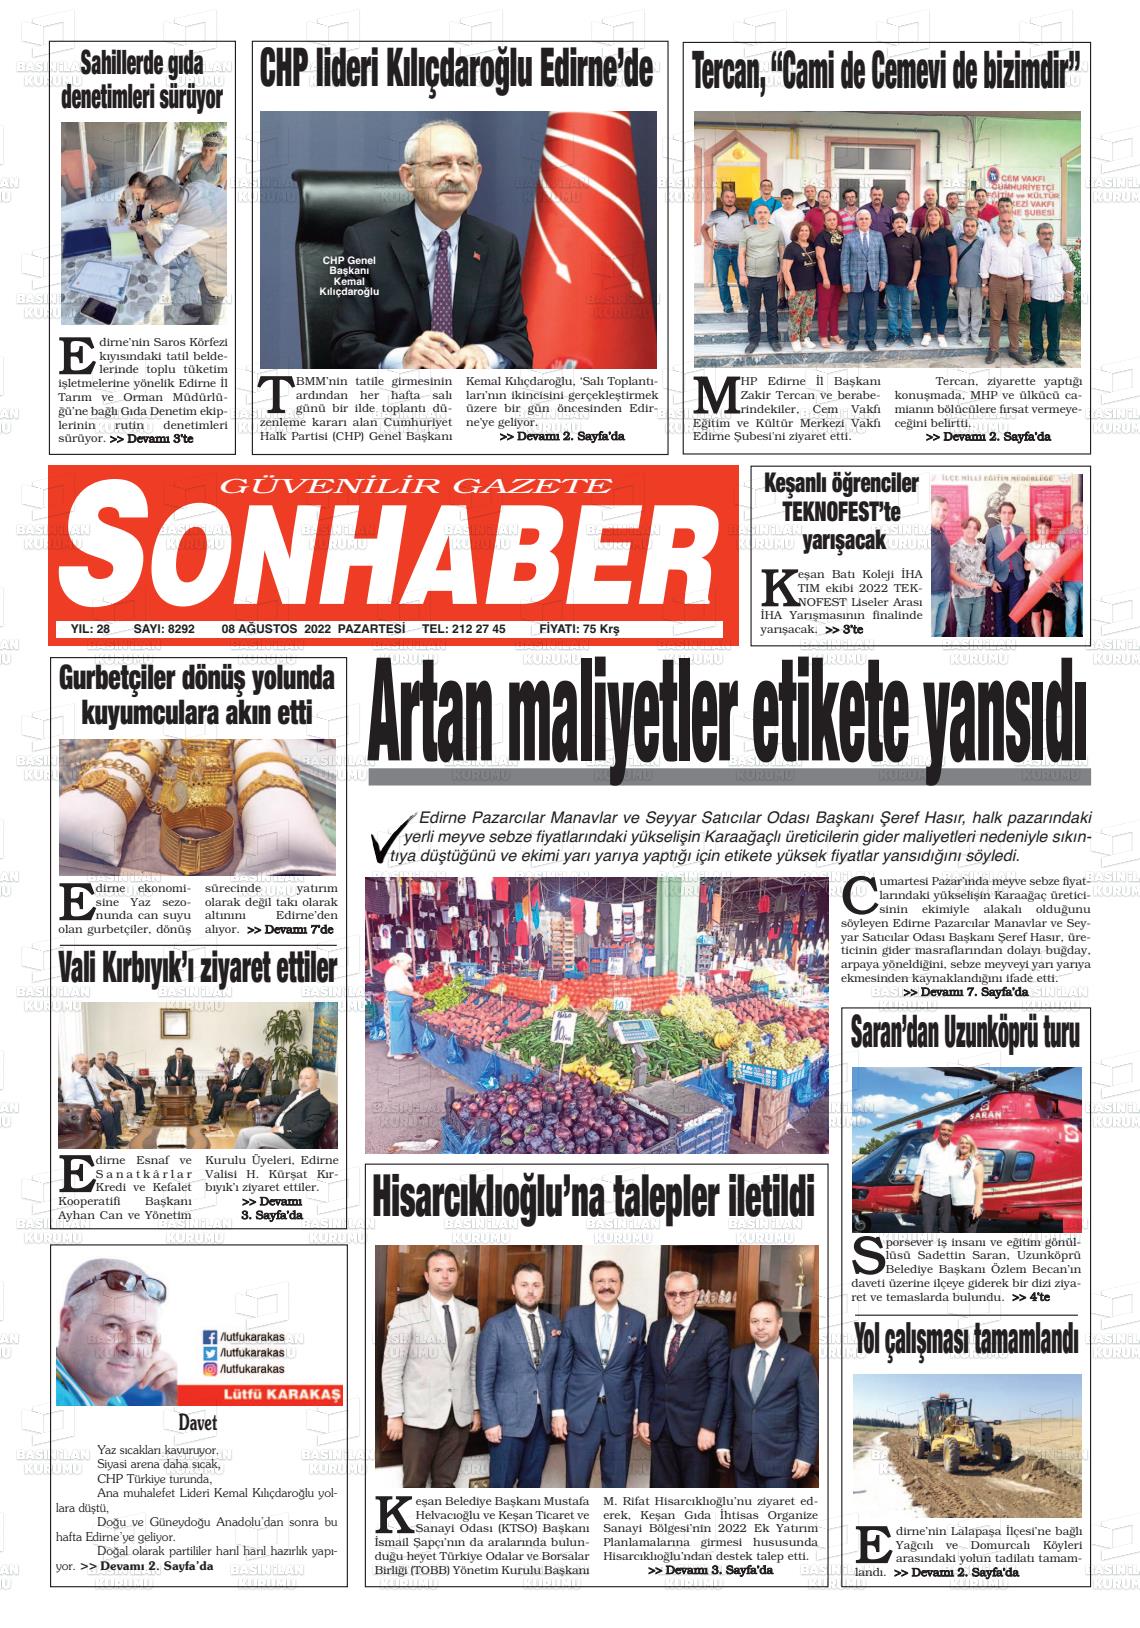 08 Ağustos 2022 Son Haber  - Edirne Son Haber Gazete Manşeti